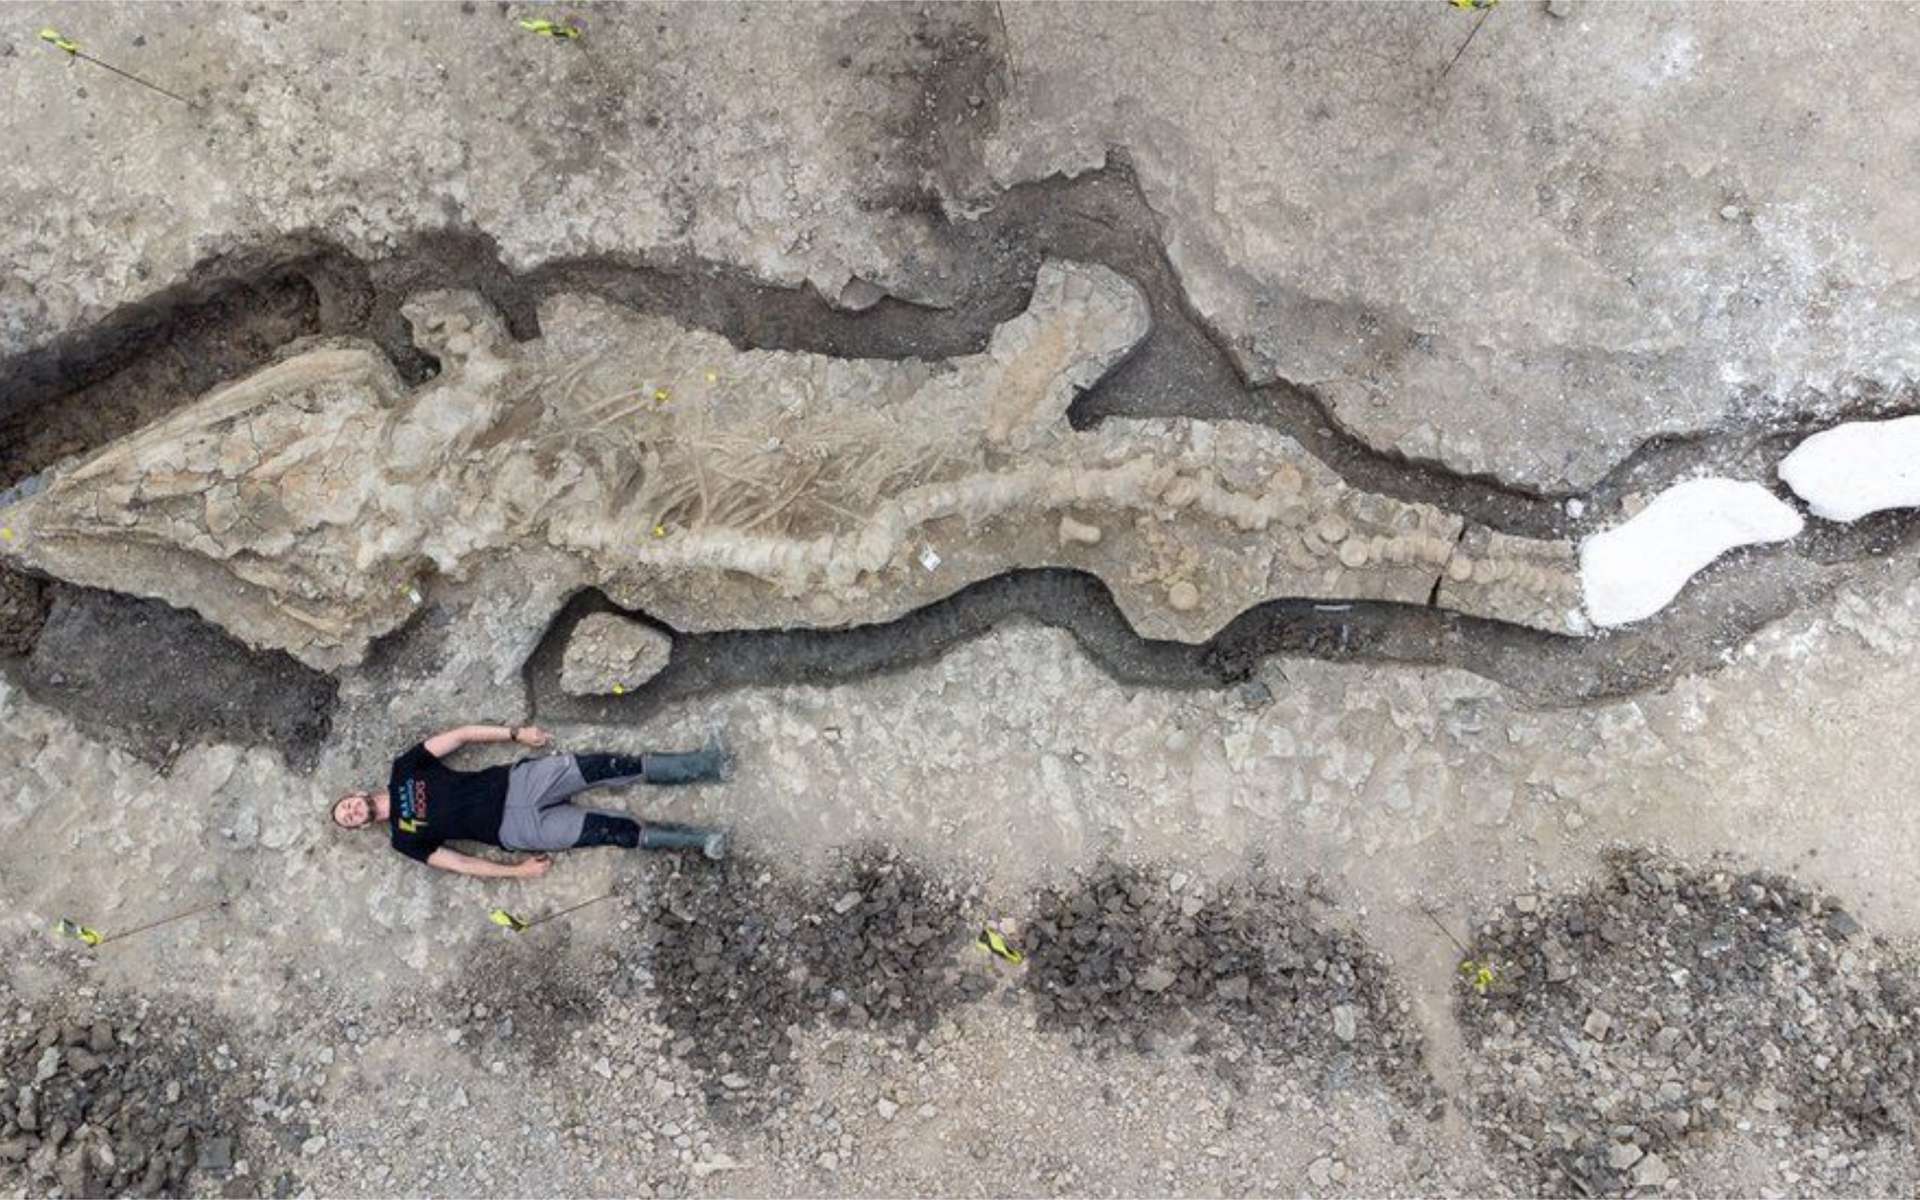 Surprenante découverte d'un « dragon des mers » géant au Royaume-Uni thumbnail